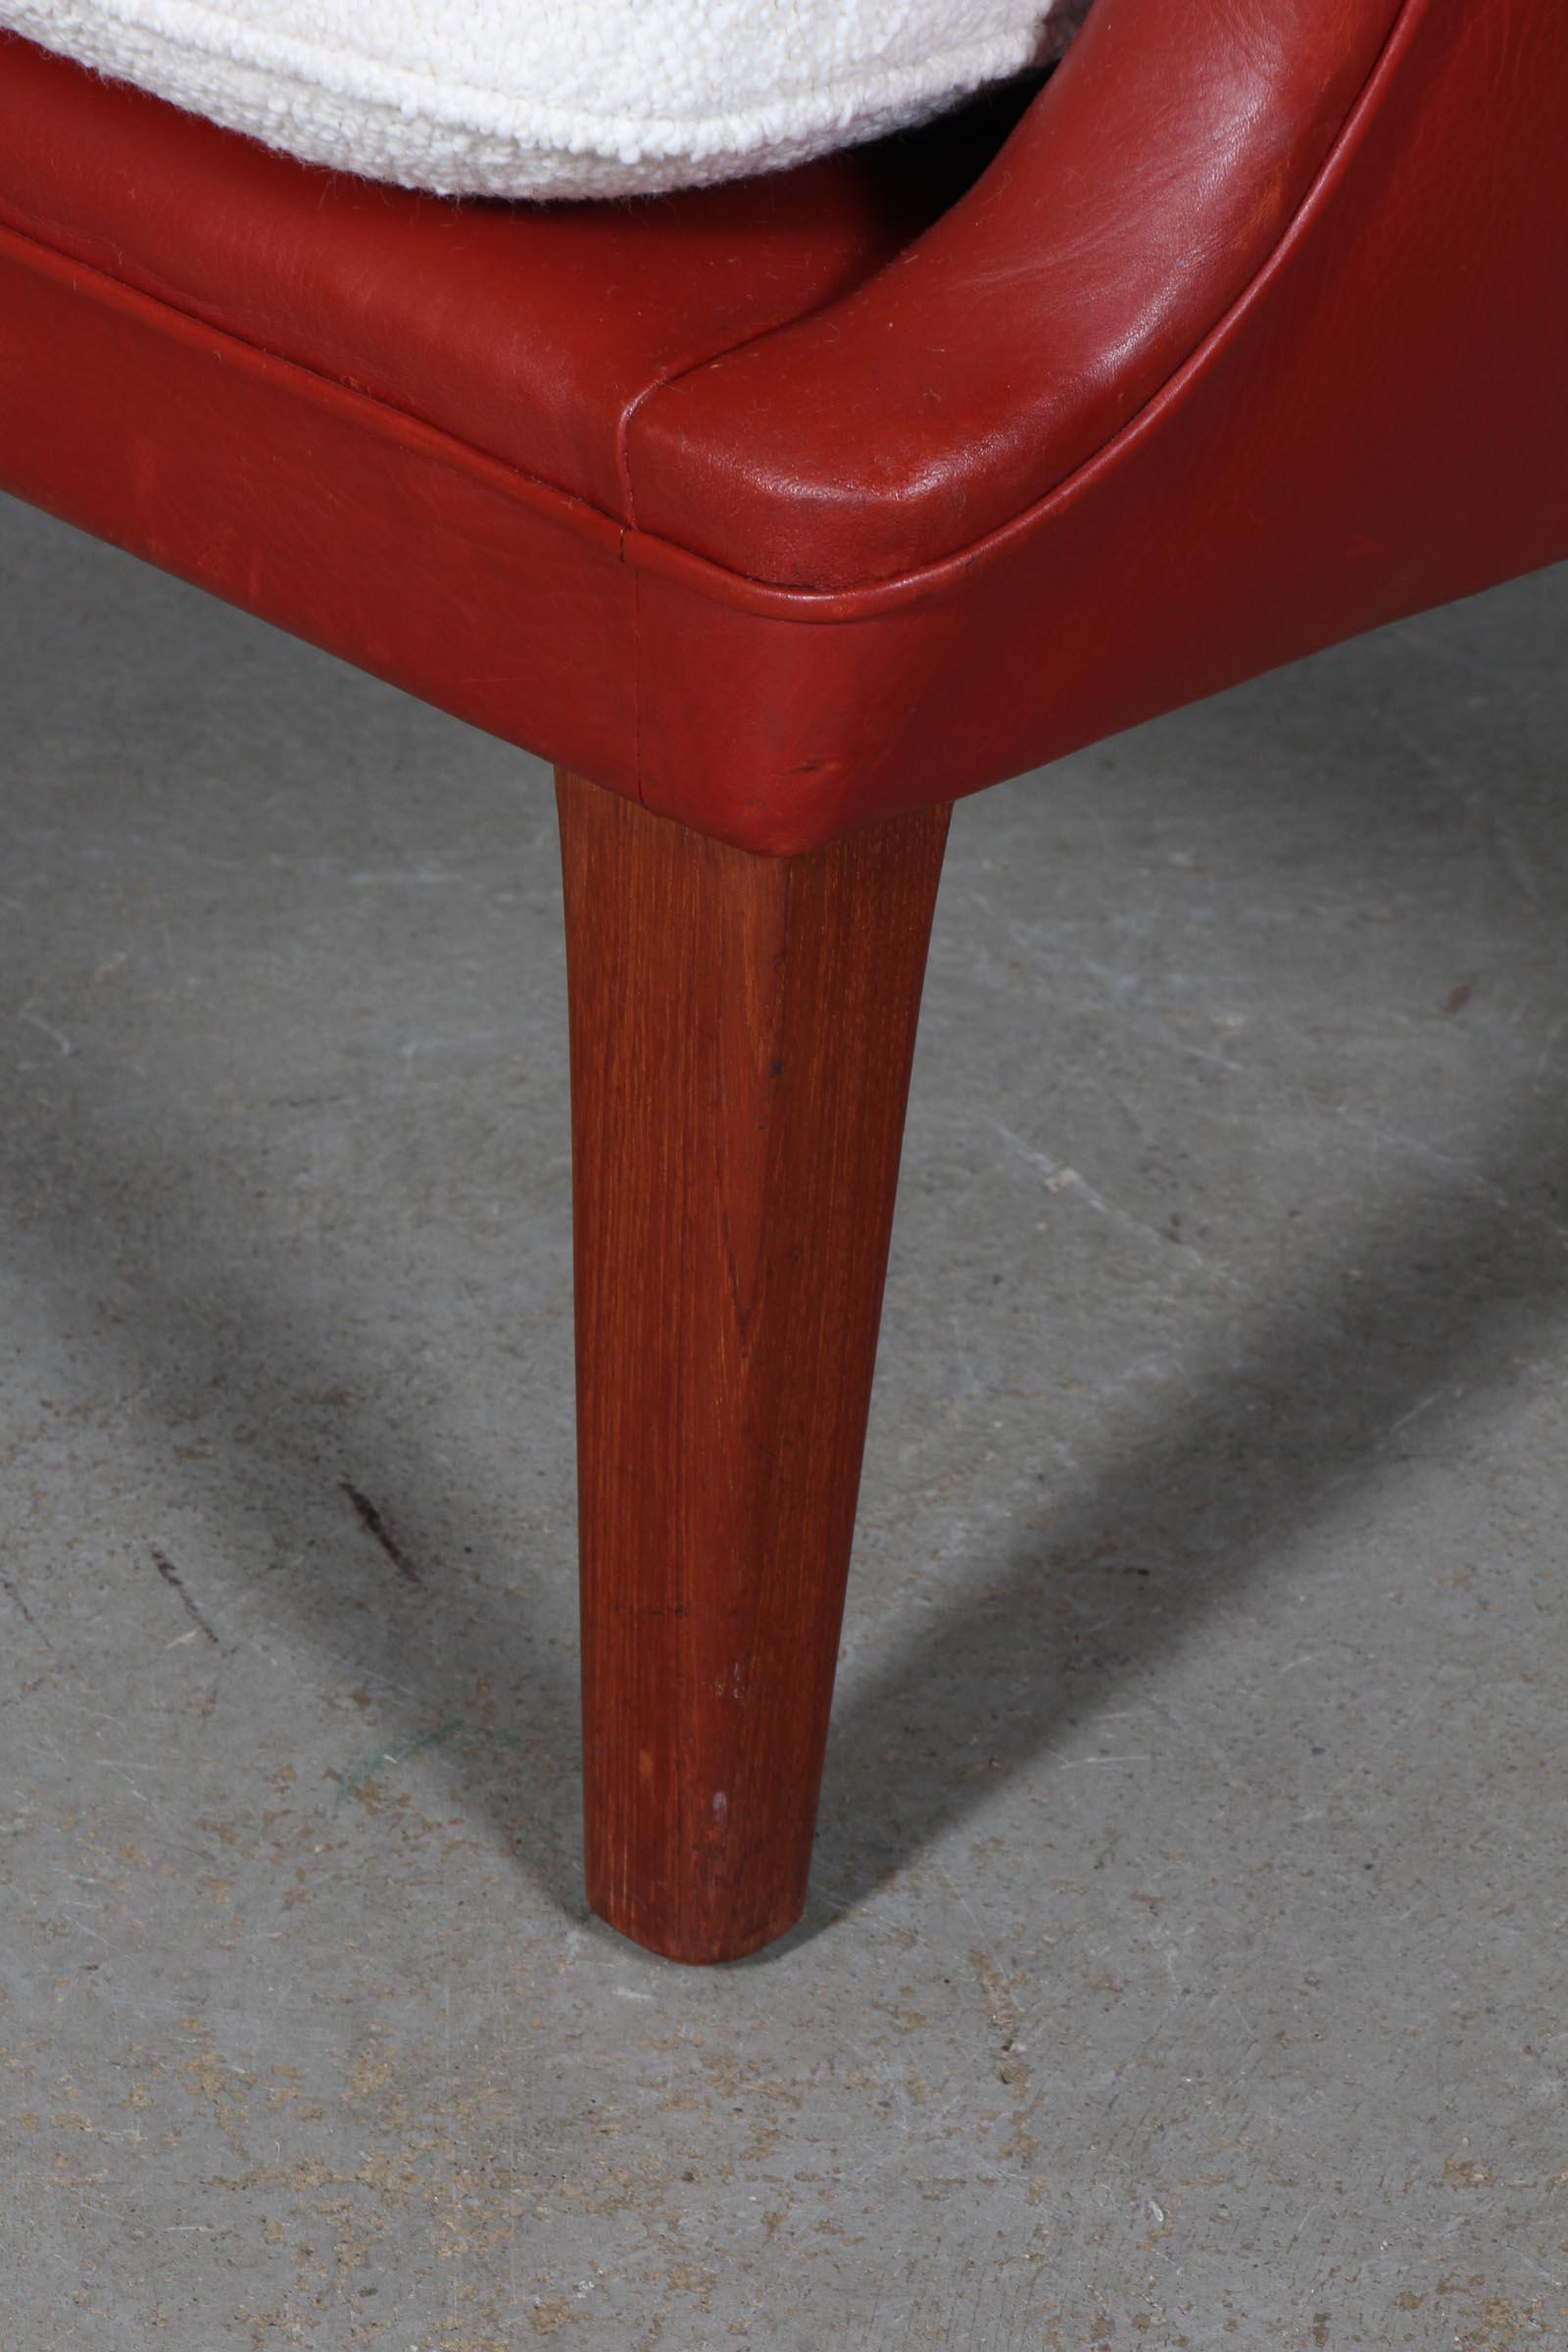 Mid-20th Century Arne Vodder Lounge Chair for Ivan Schlechter